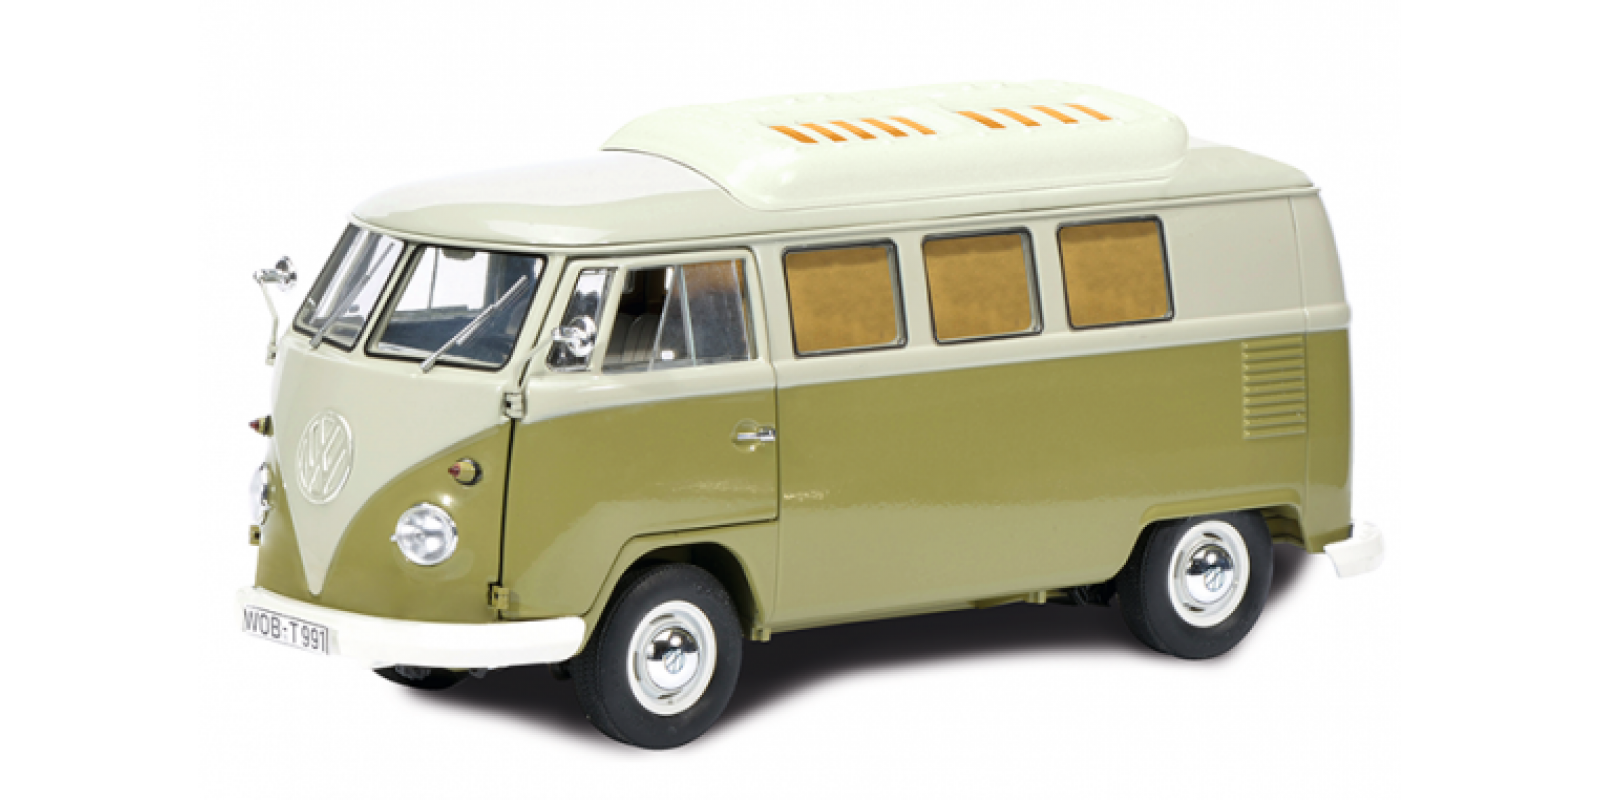 SC452633800 VW T1c camping bus